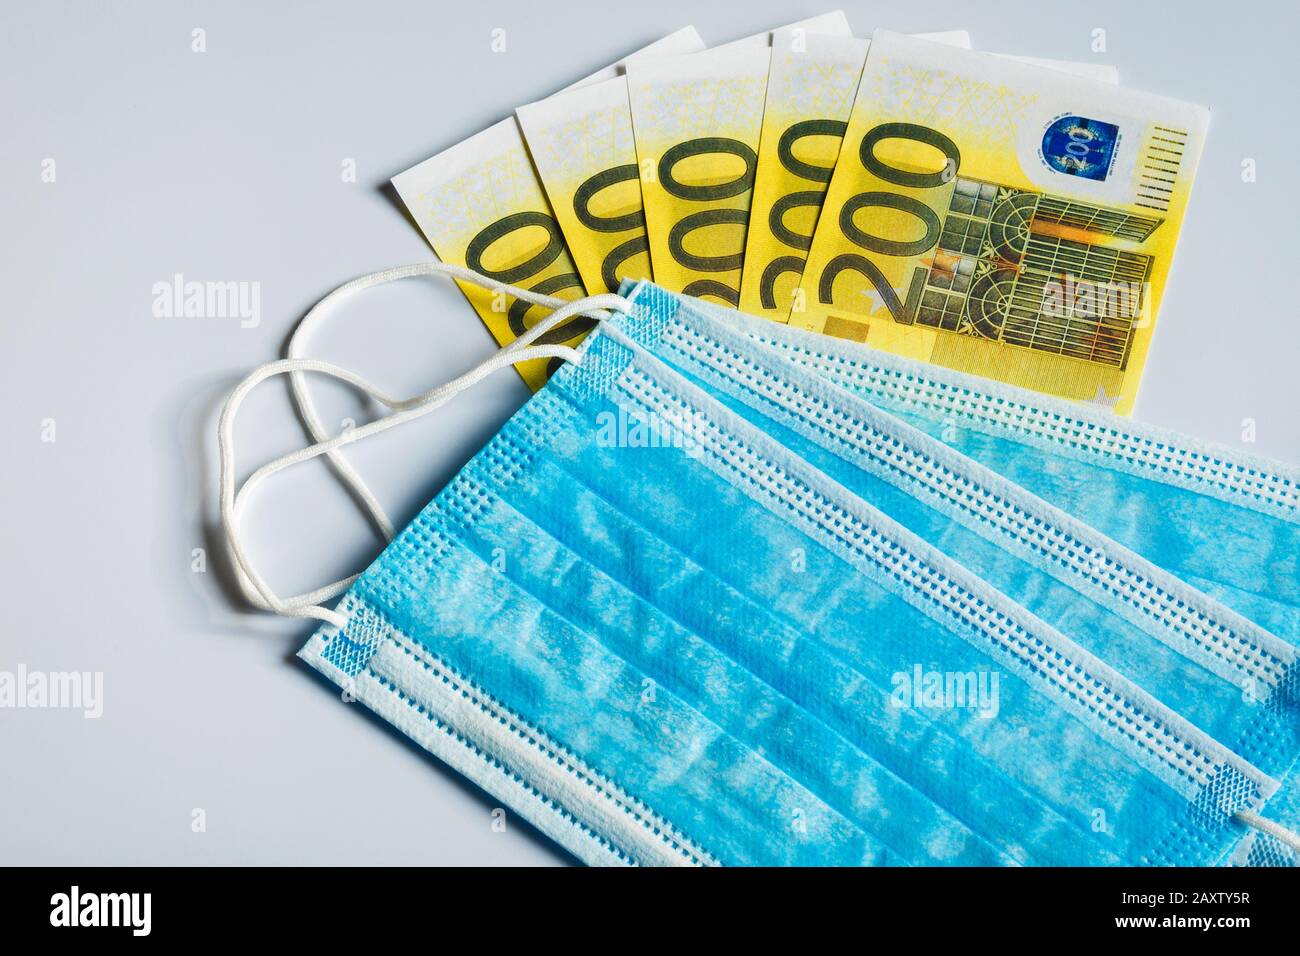 Maschere mediche e banconote da 200 euro come simbolo di un aumento dei prezzi per la protezione del tratto respiratorio dai virus. Foto Stock